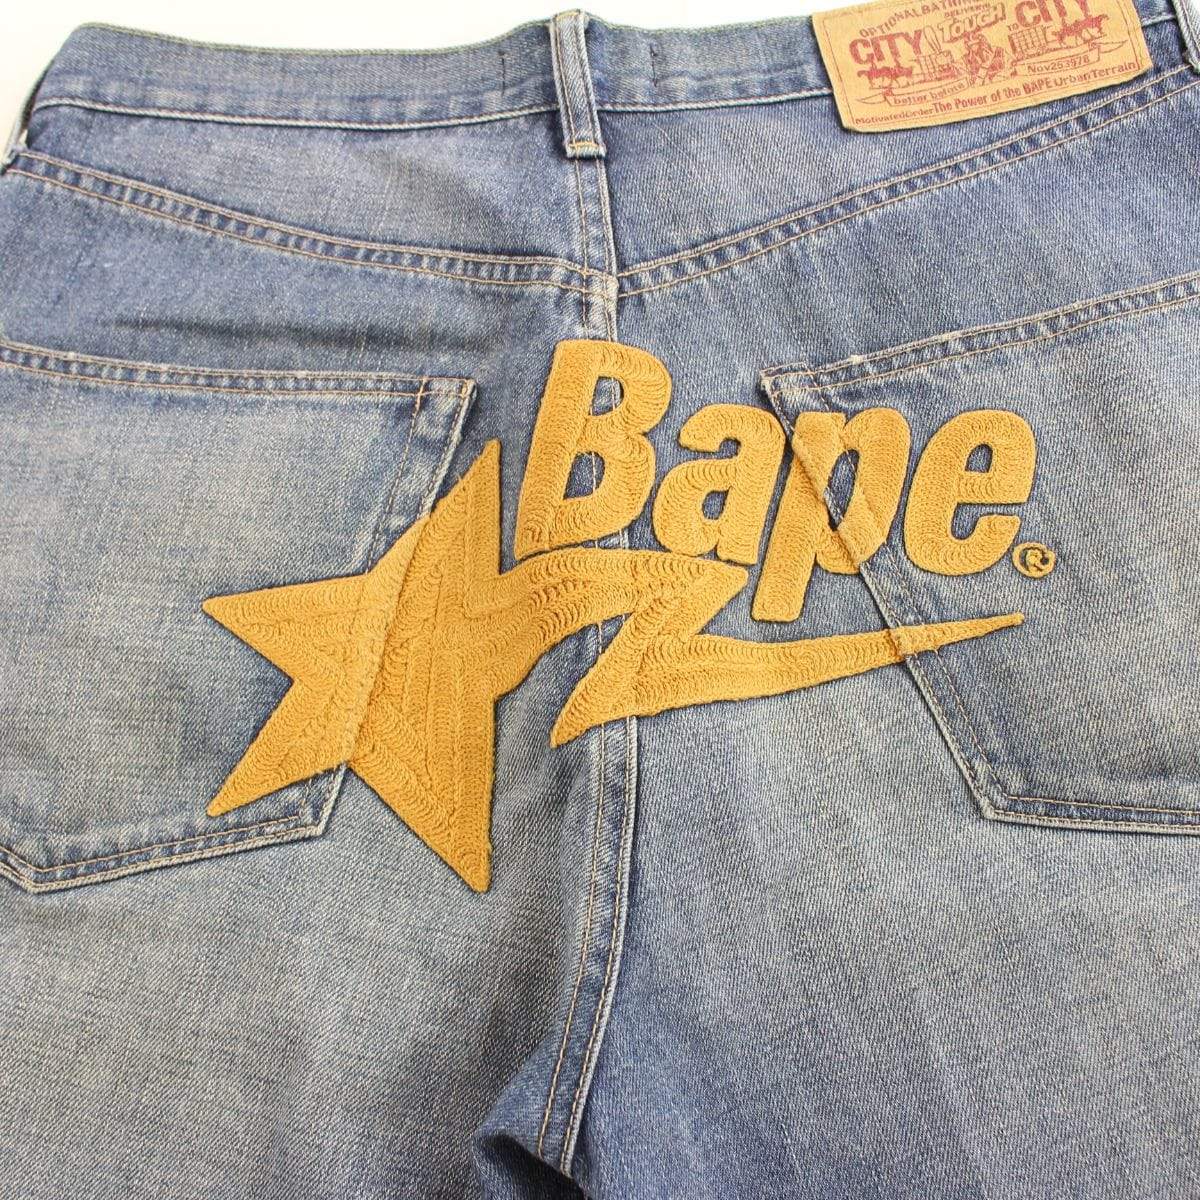 bape bapesta stitched denim shorts - SaruGeneral